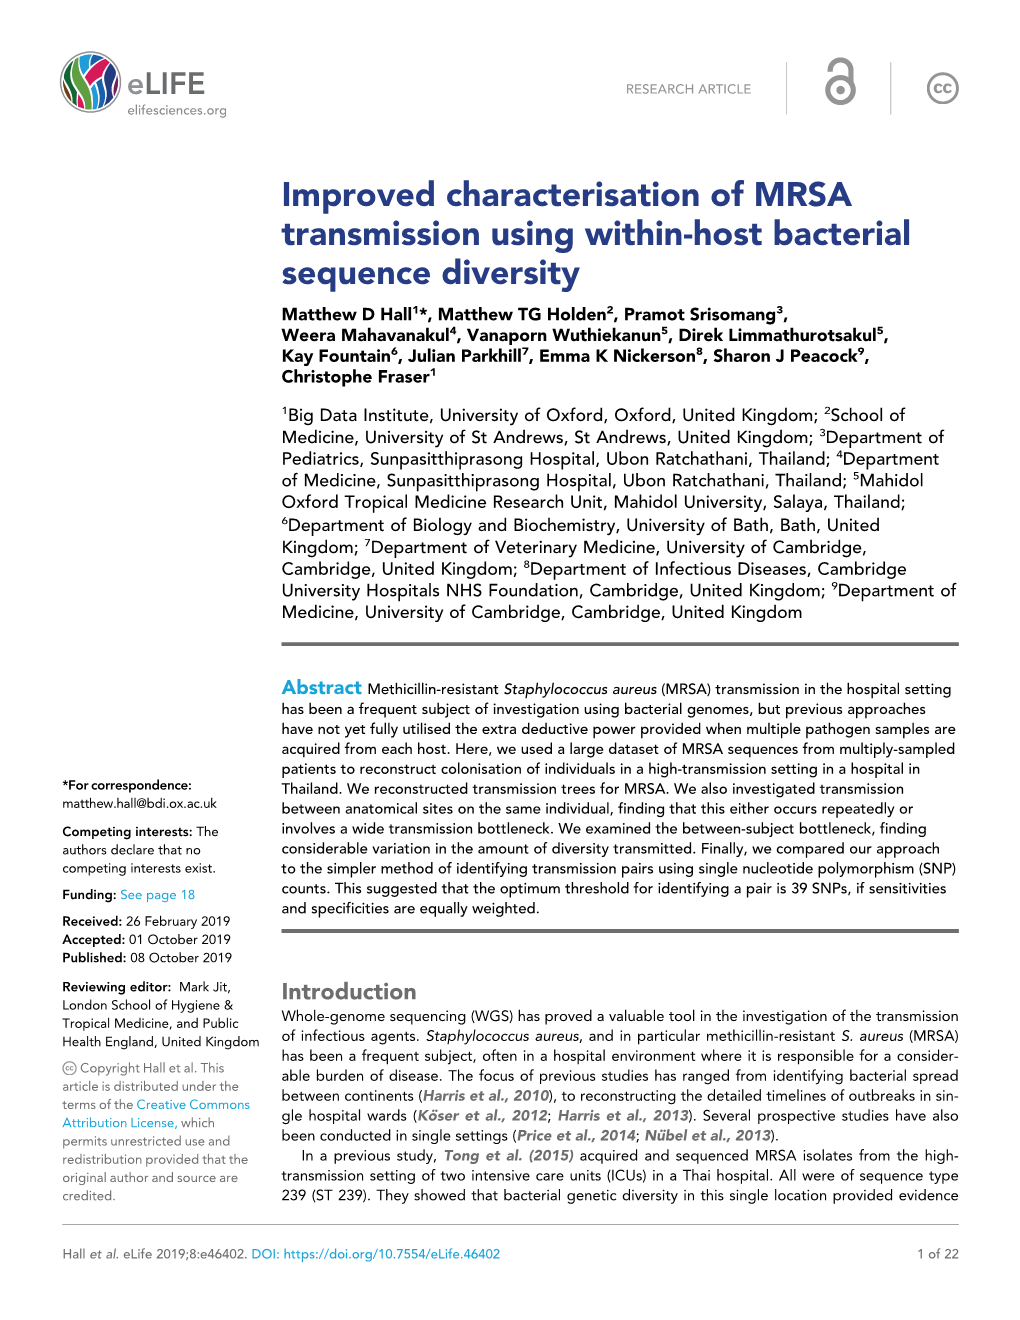 Improved Characterisation of MRSA Transmission Using Within-Host